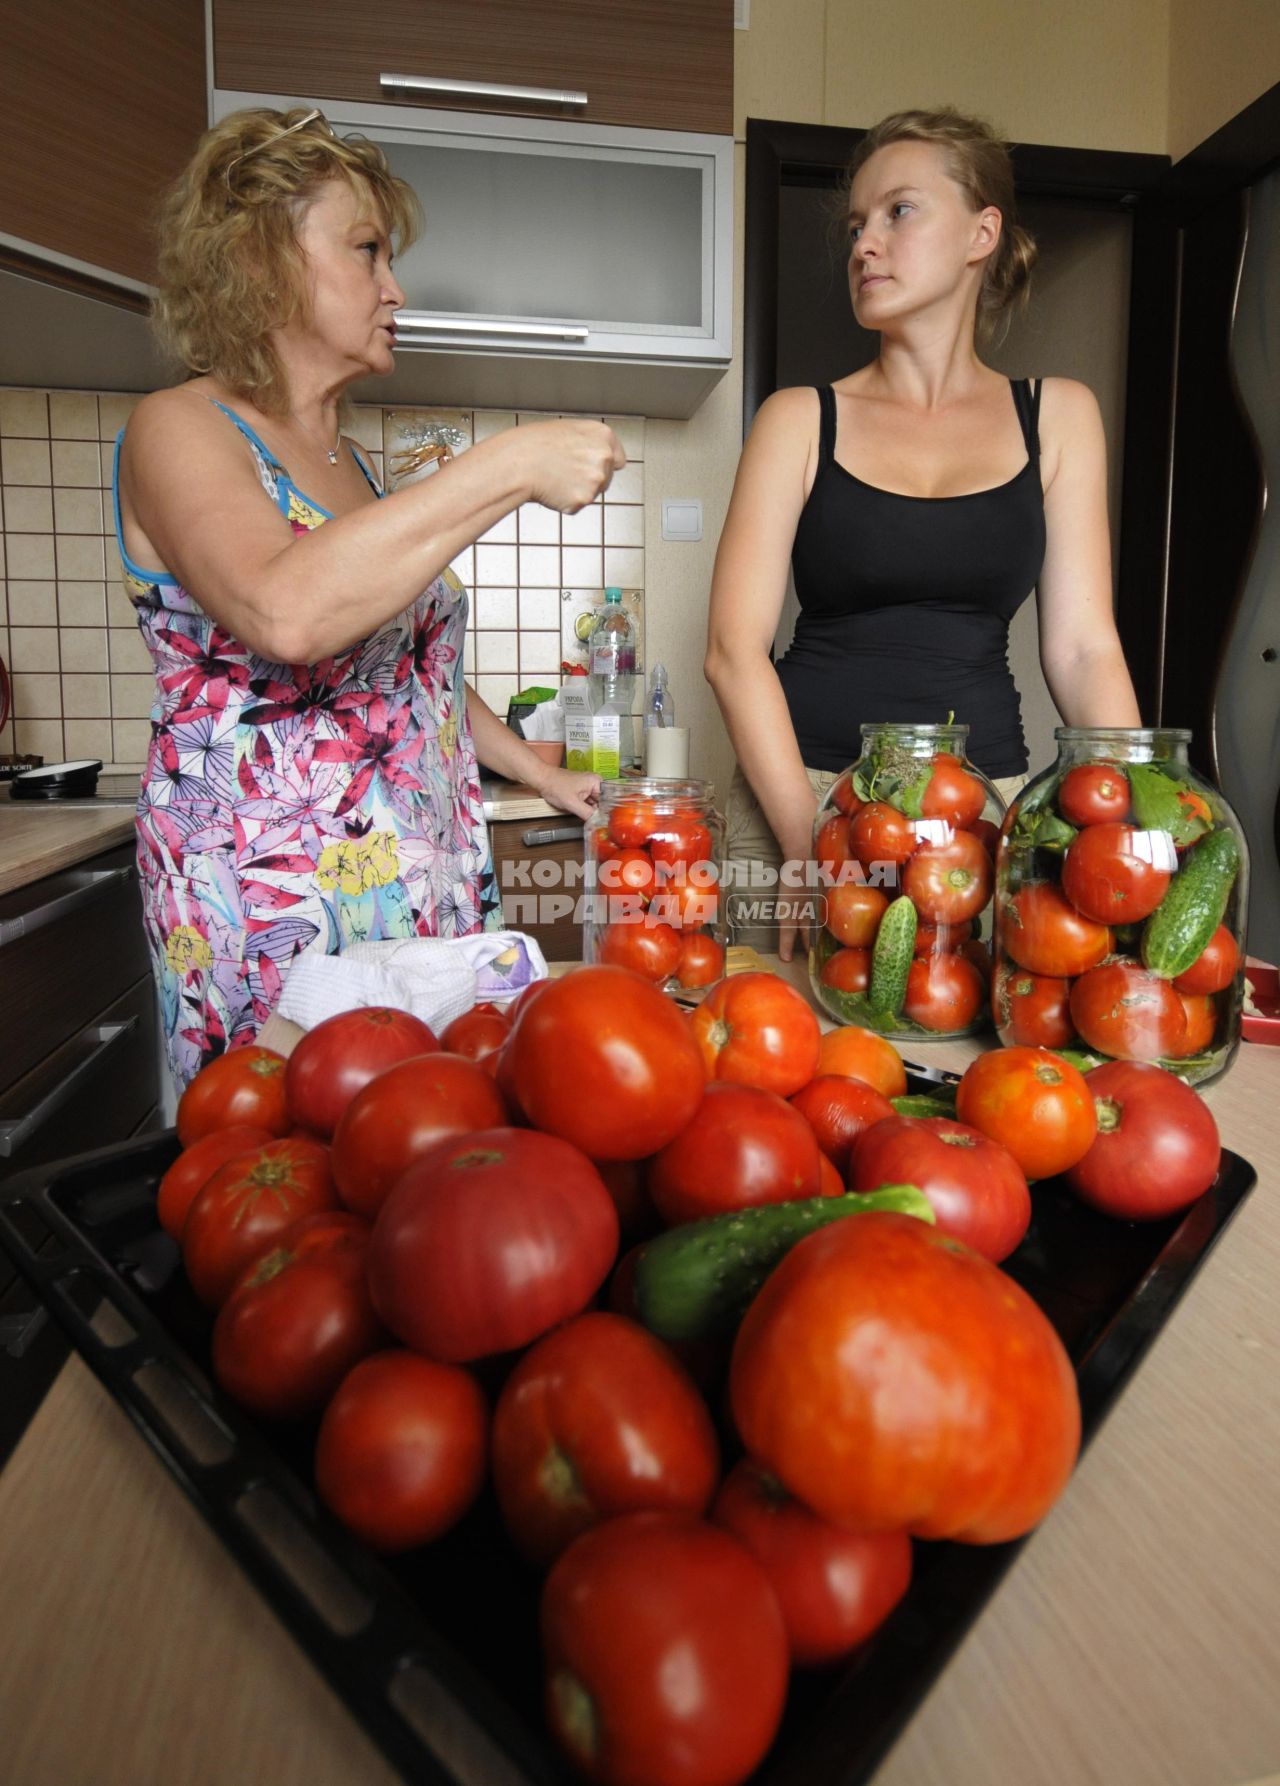 Домашнее консервирование.  На снимке: женщины укладывают овощи в банки.